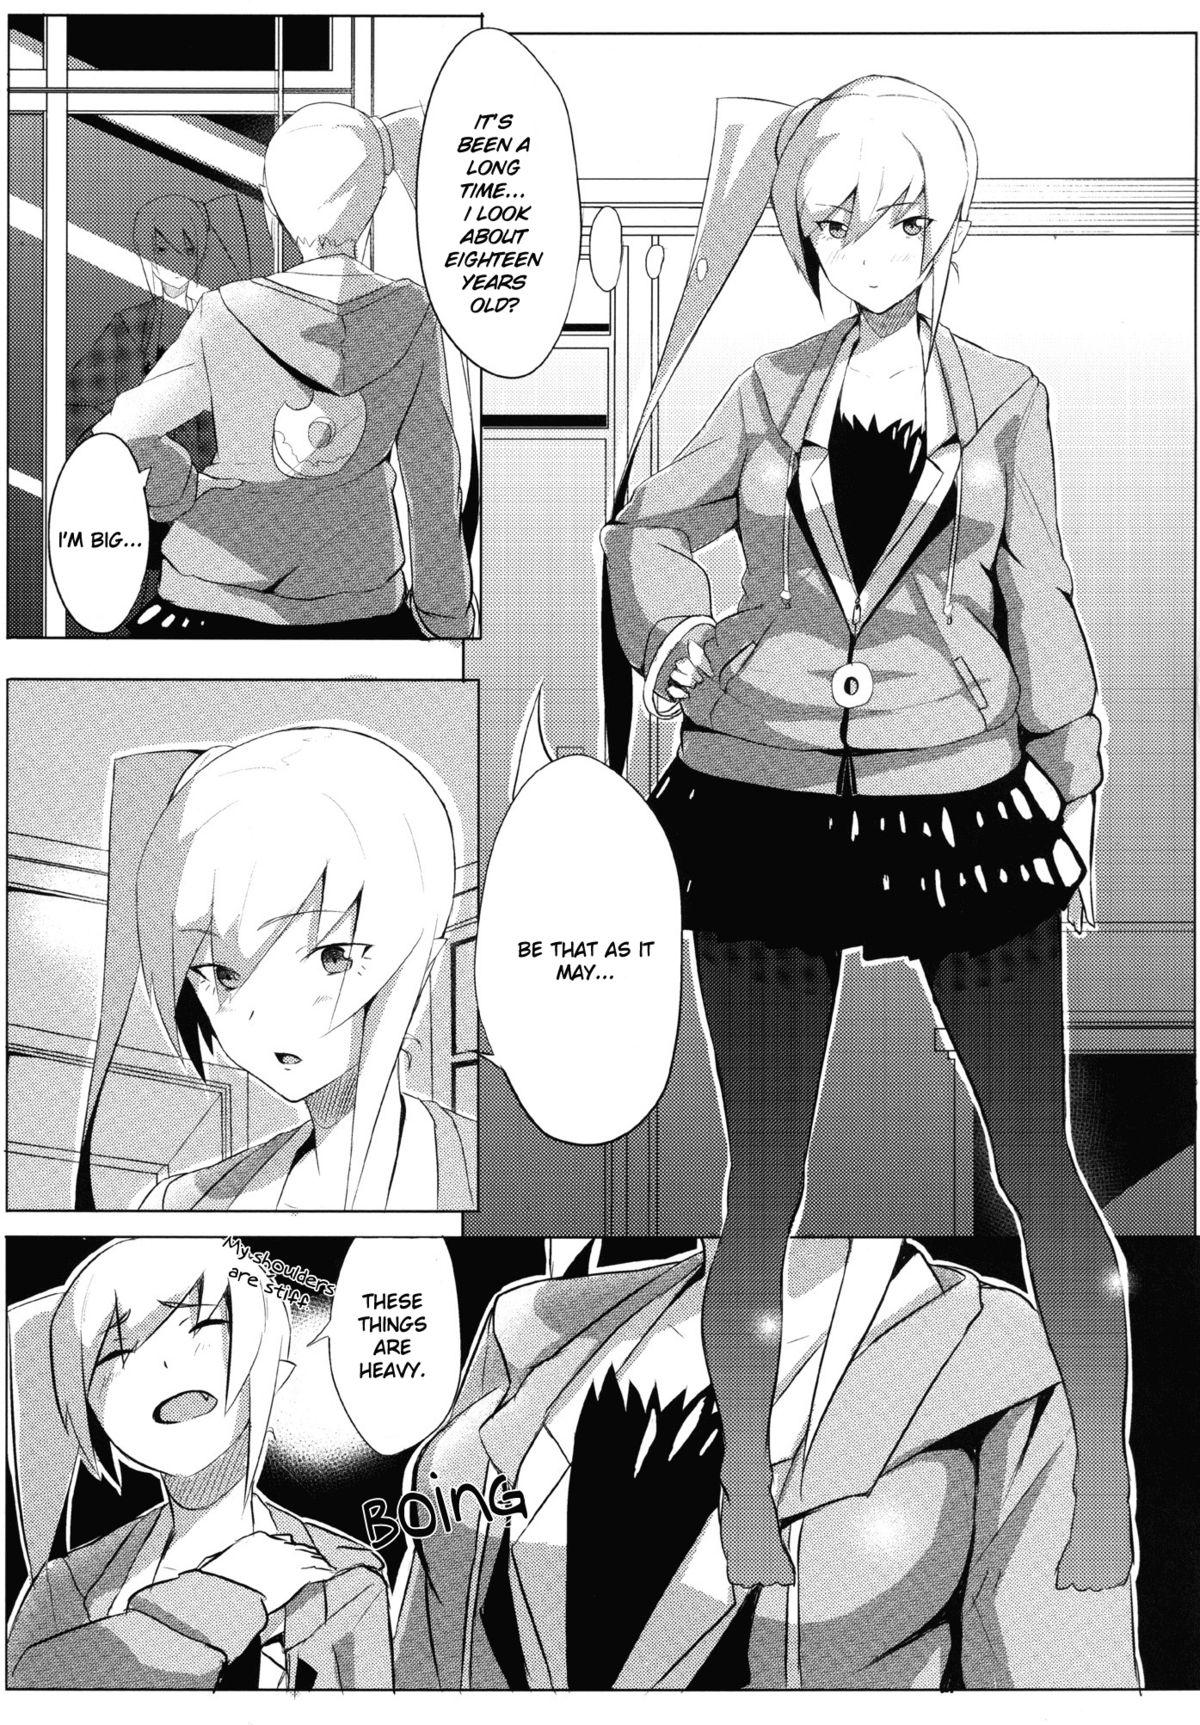 Women Sucking Dicks Shinobu x Play - Bakemonogatari Anus - Page 3